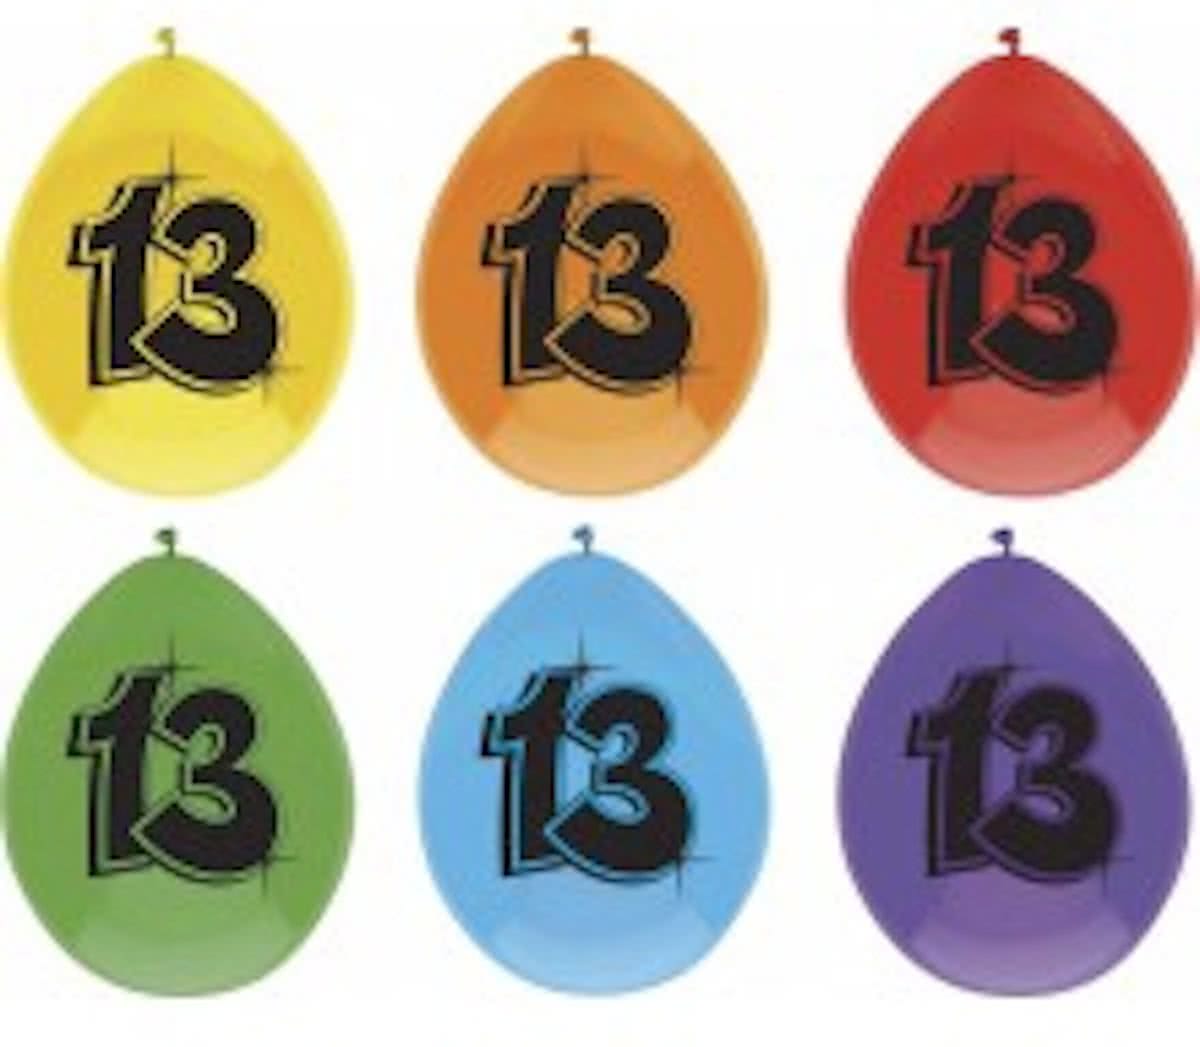 leeftijd ballonnen - 13 - 6 x diverse kleuren